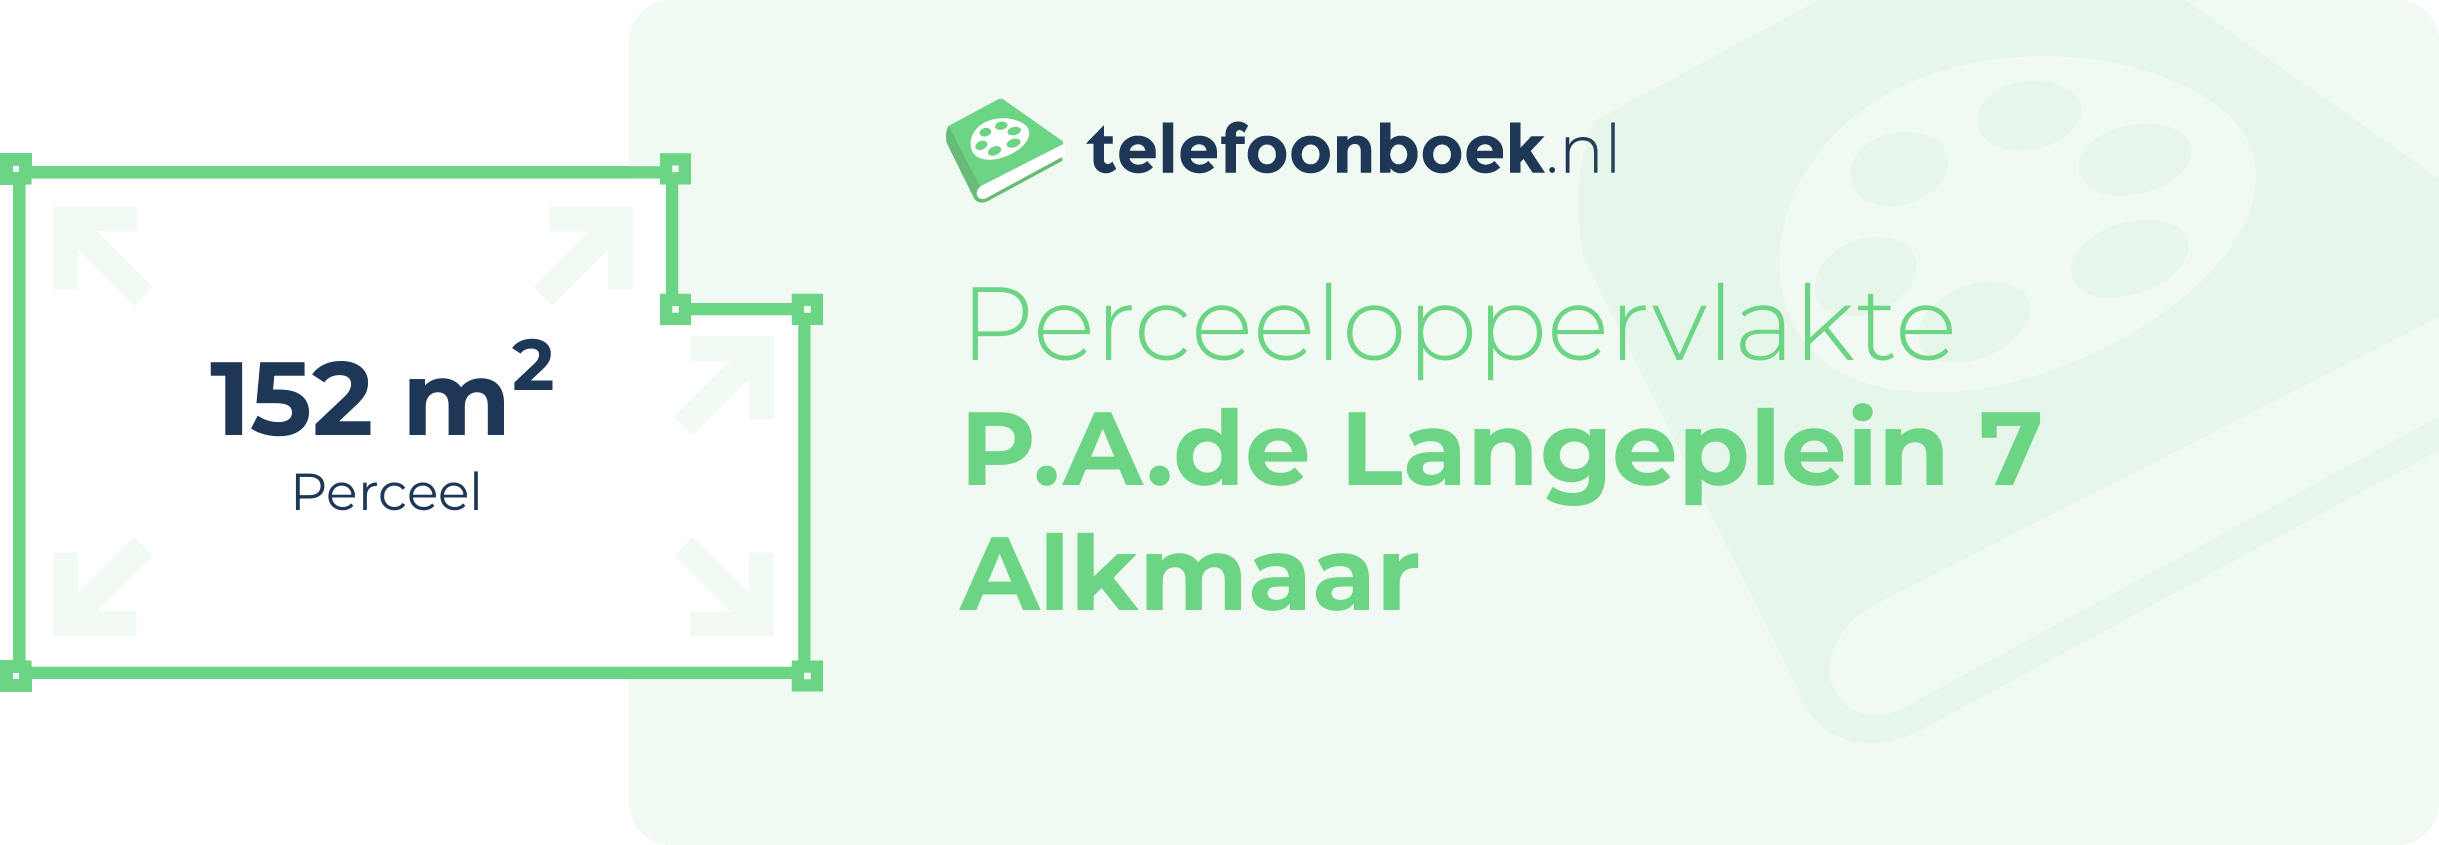 Perceeloppervlakte P.A.de Langeplein 7 Alkmaar